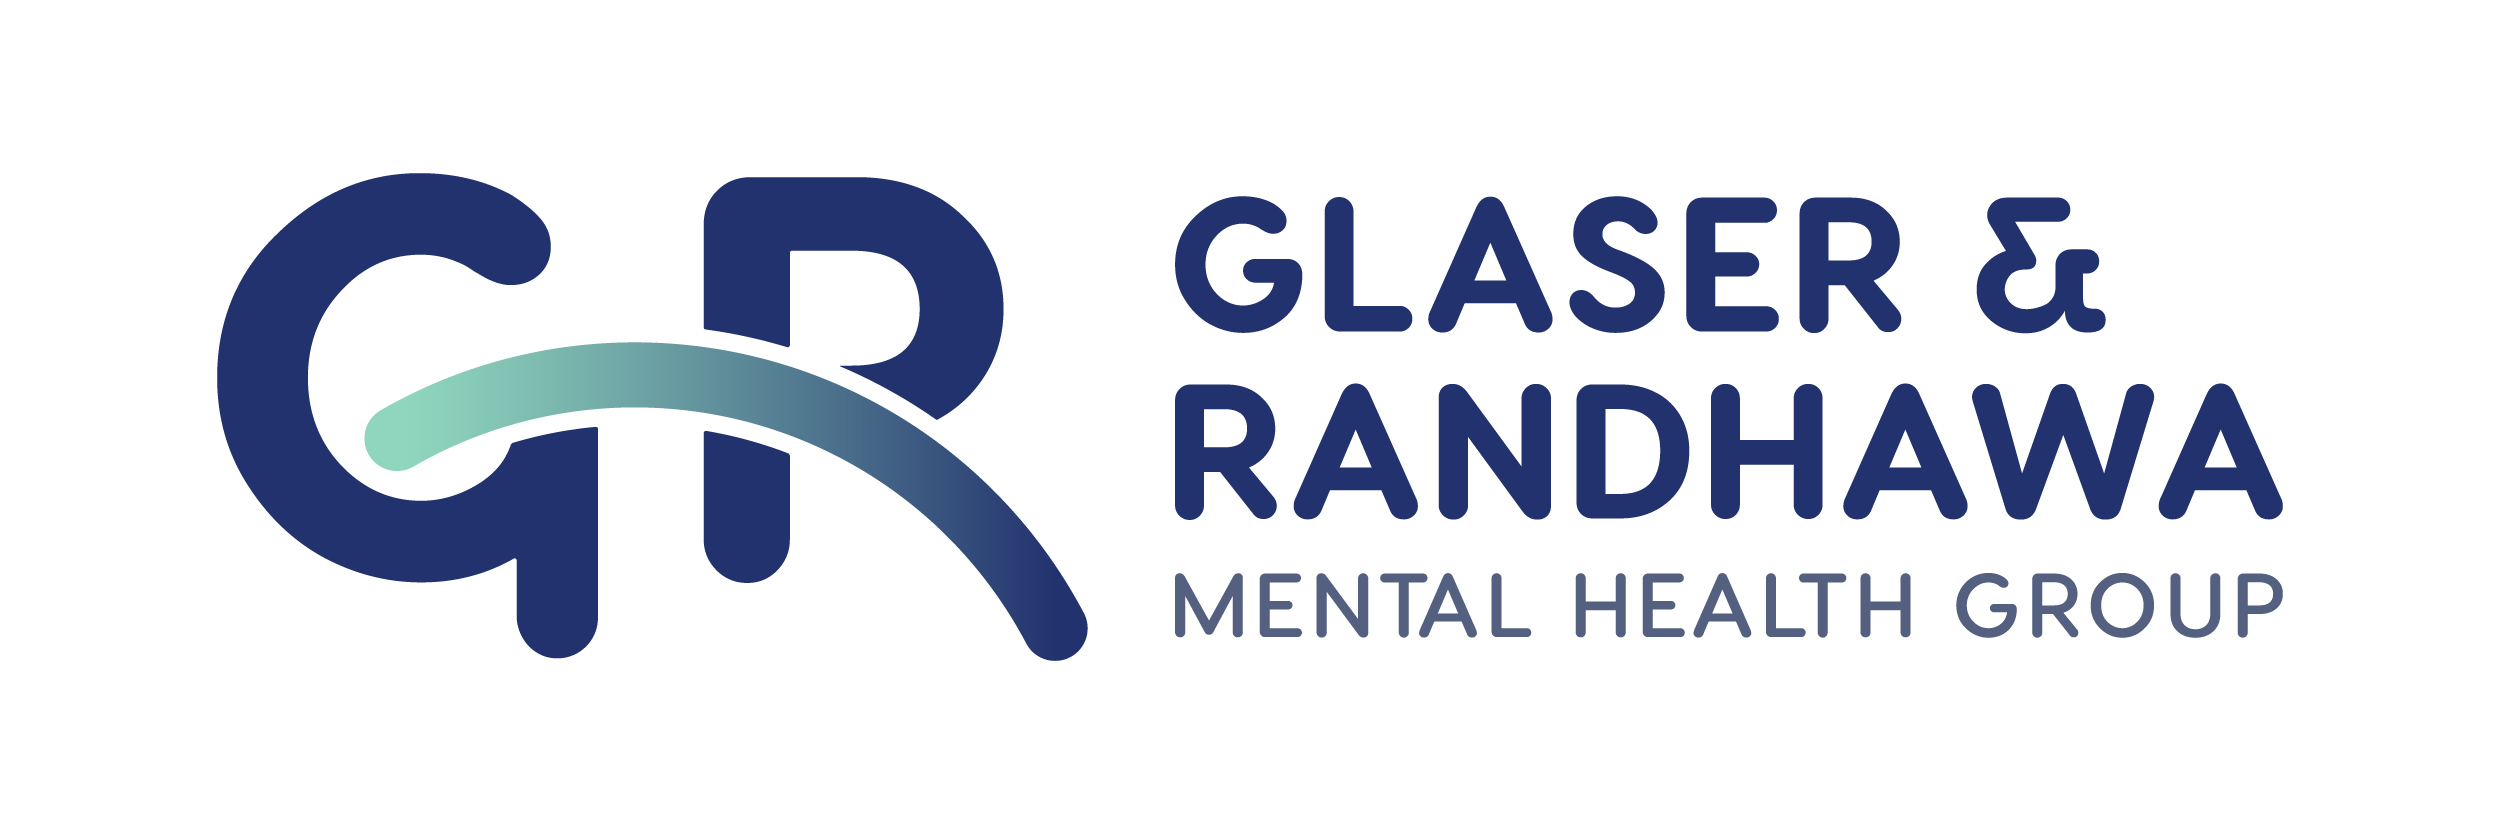 GR - Glaser & Randhawa Mental Health Group logo